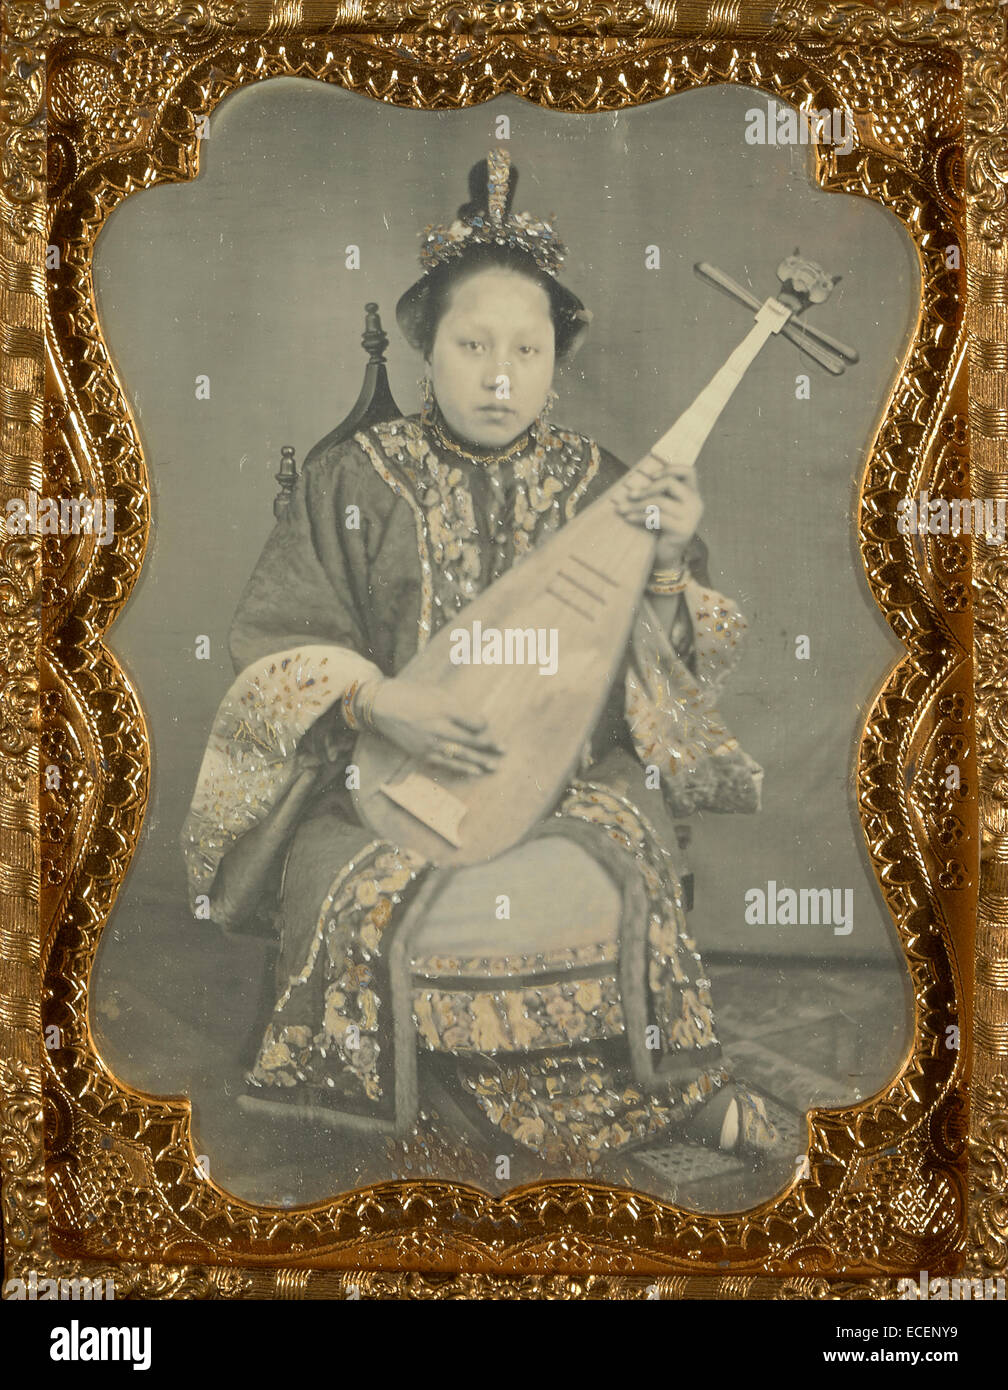 Donna cinese con un mandolino; Unknown maker, American; 1860; Daguerreotype, colorate a mano; 1/4 piastra, Immagine: 9 x 6,5 cm (3 9/16 x 2 9/16 in.) Foto Stock